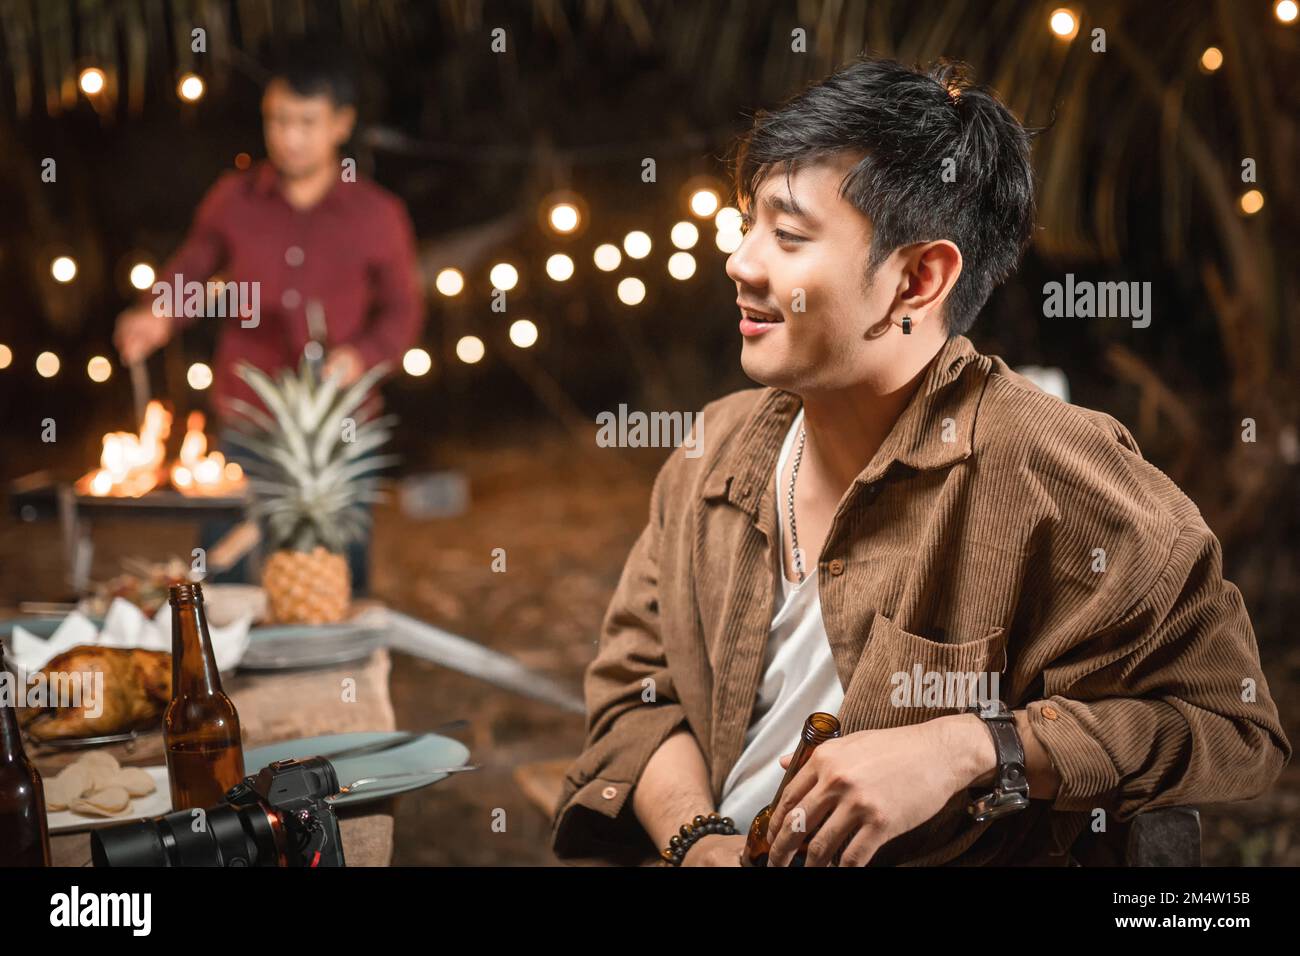 Les jeunes hommes asiatiques aiment la fête de nuit Banque D'Images